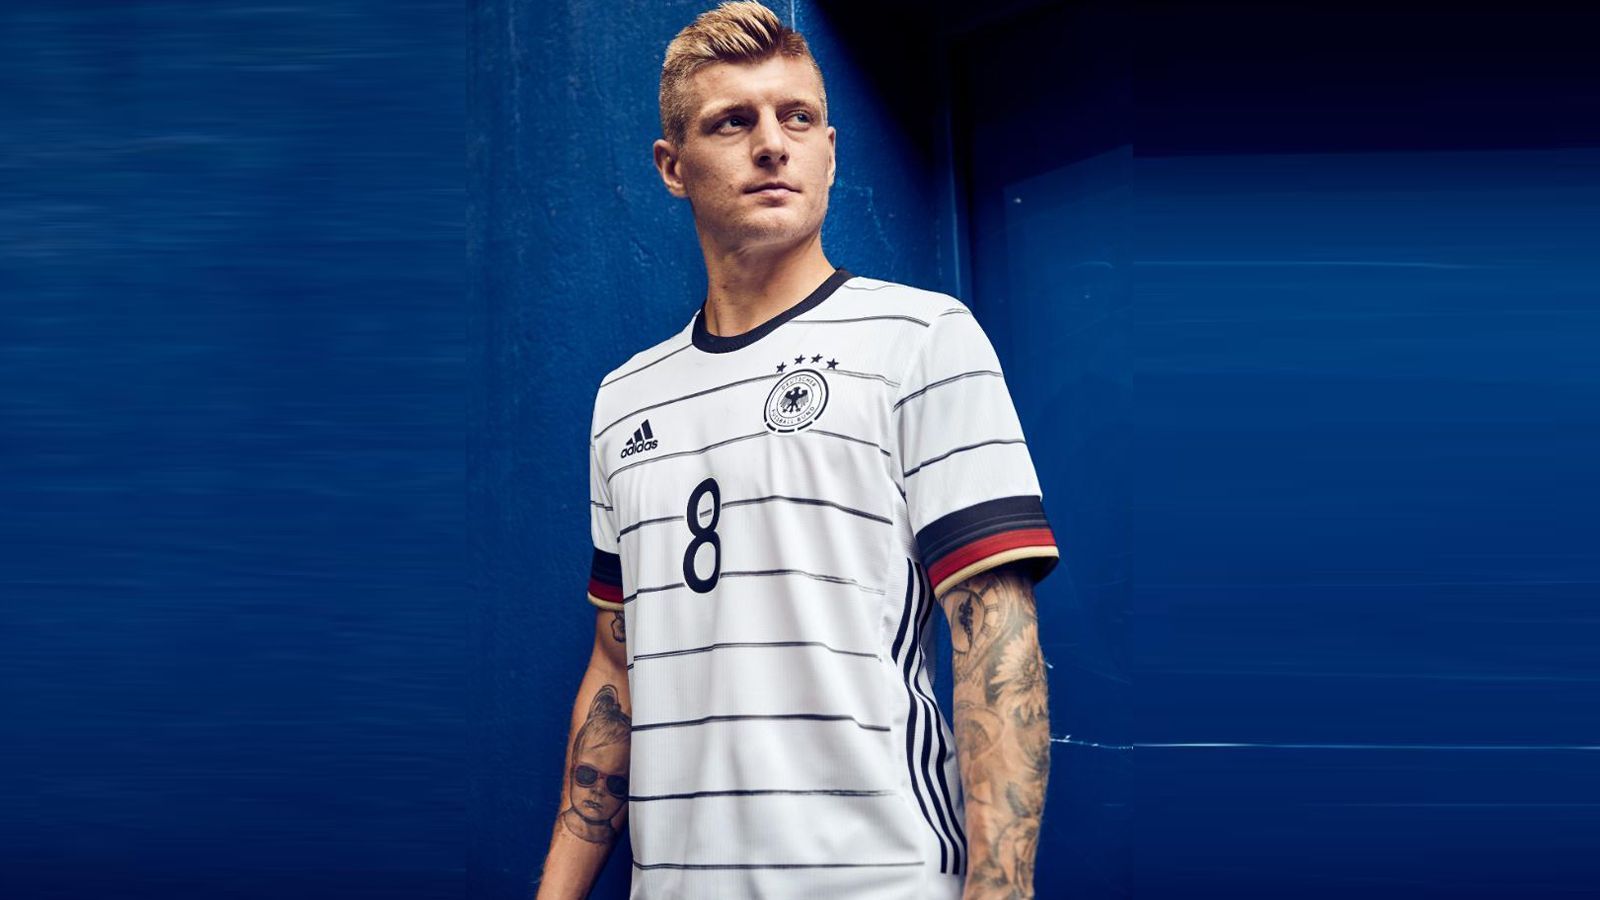 
                <strong>Germany</strong><br>
                Toni Kroos präsentiert das deutsche Trikot. Mit Nadelstreifen, aber ohne adidas-Streifen auf der Schulter. Dafür finden sich diese an der Seite wieder. Und der Kragen ist in Rundform.
              